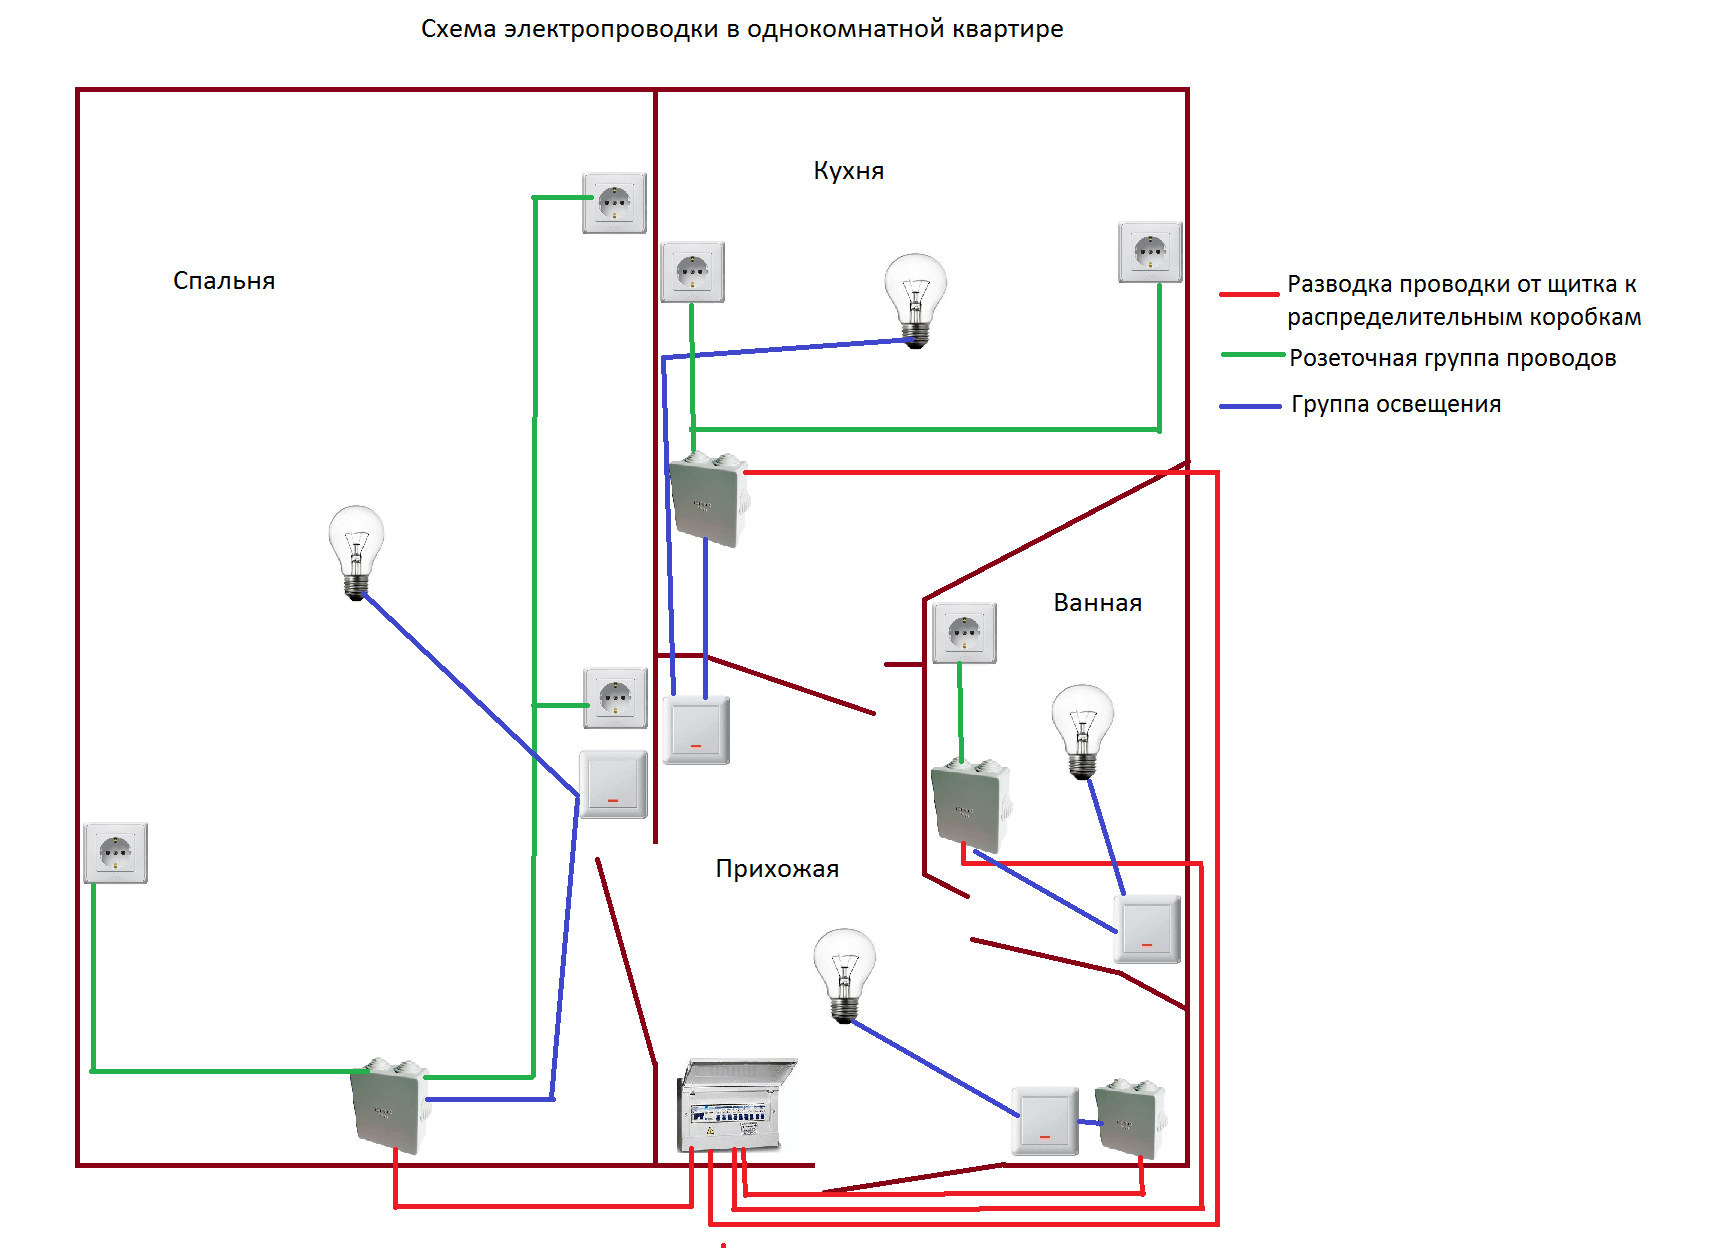 Проводка электропроводка. Схема проводки подключение однокомнотоной кв. Схема проводки электричества в квартире 1 комнатной. Схема присоединения проводов в квартирной проводки. Схема разводки проводки в однокомнатной квартире.